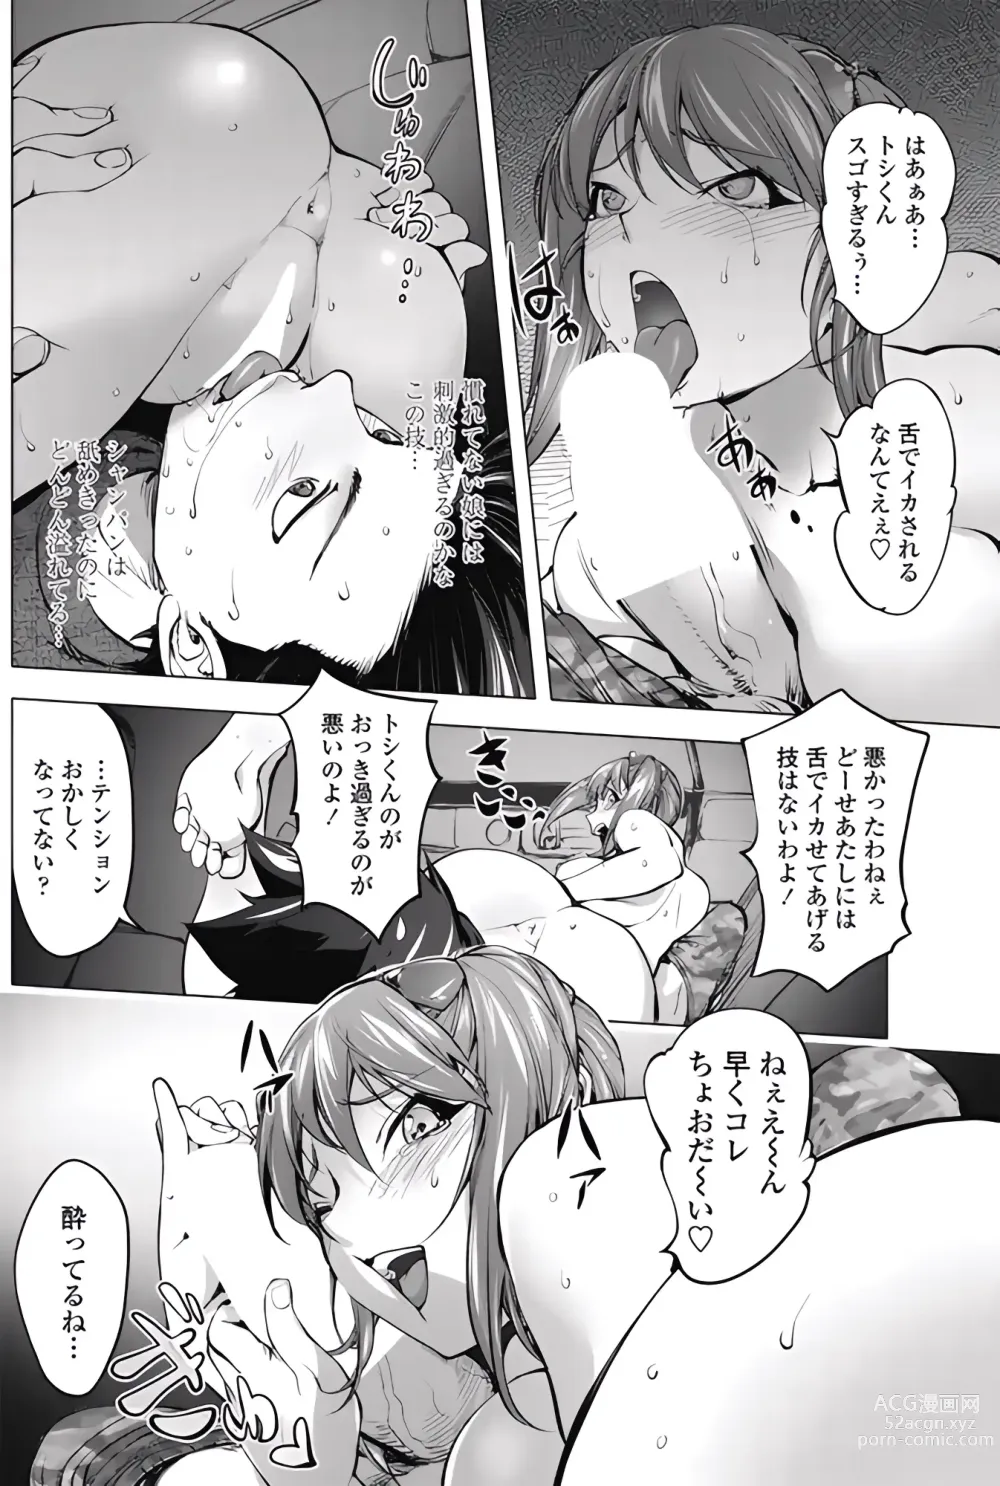 Page 12 of manga Ojou to Toshio no Christmas